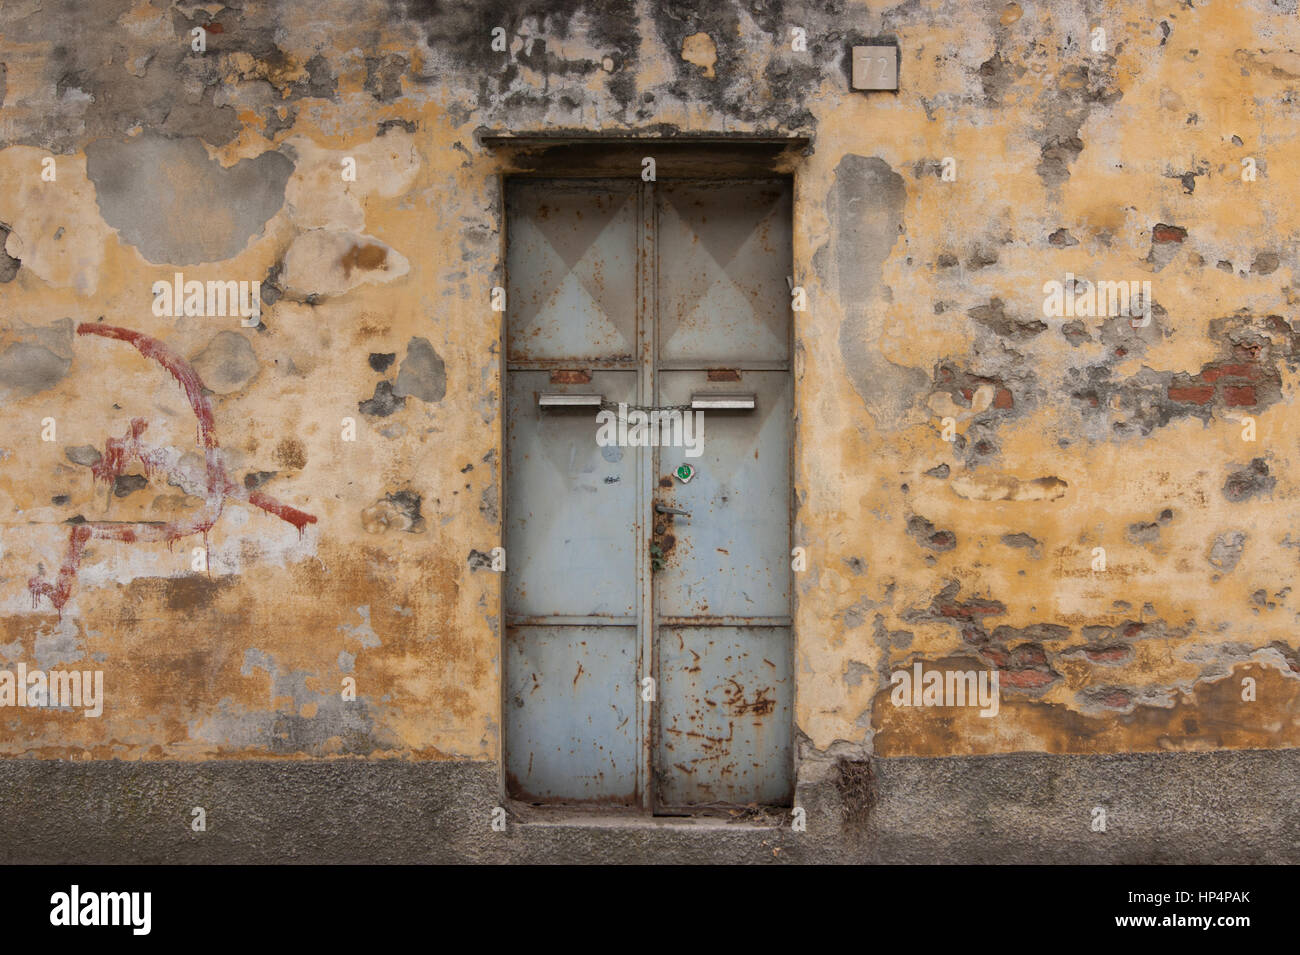 Vieille porte en métal rouillé avec un marteau et la faucille de Parti communiste graffitis sur un mur de pierre taillée dans le nord de l'Italie Banque D'Images